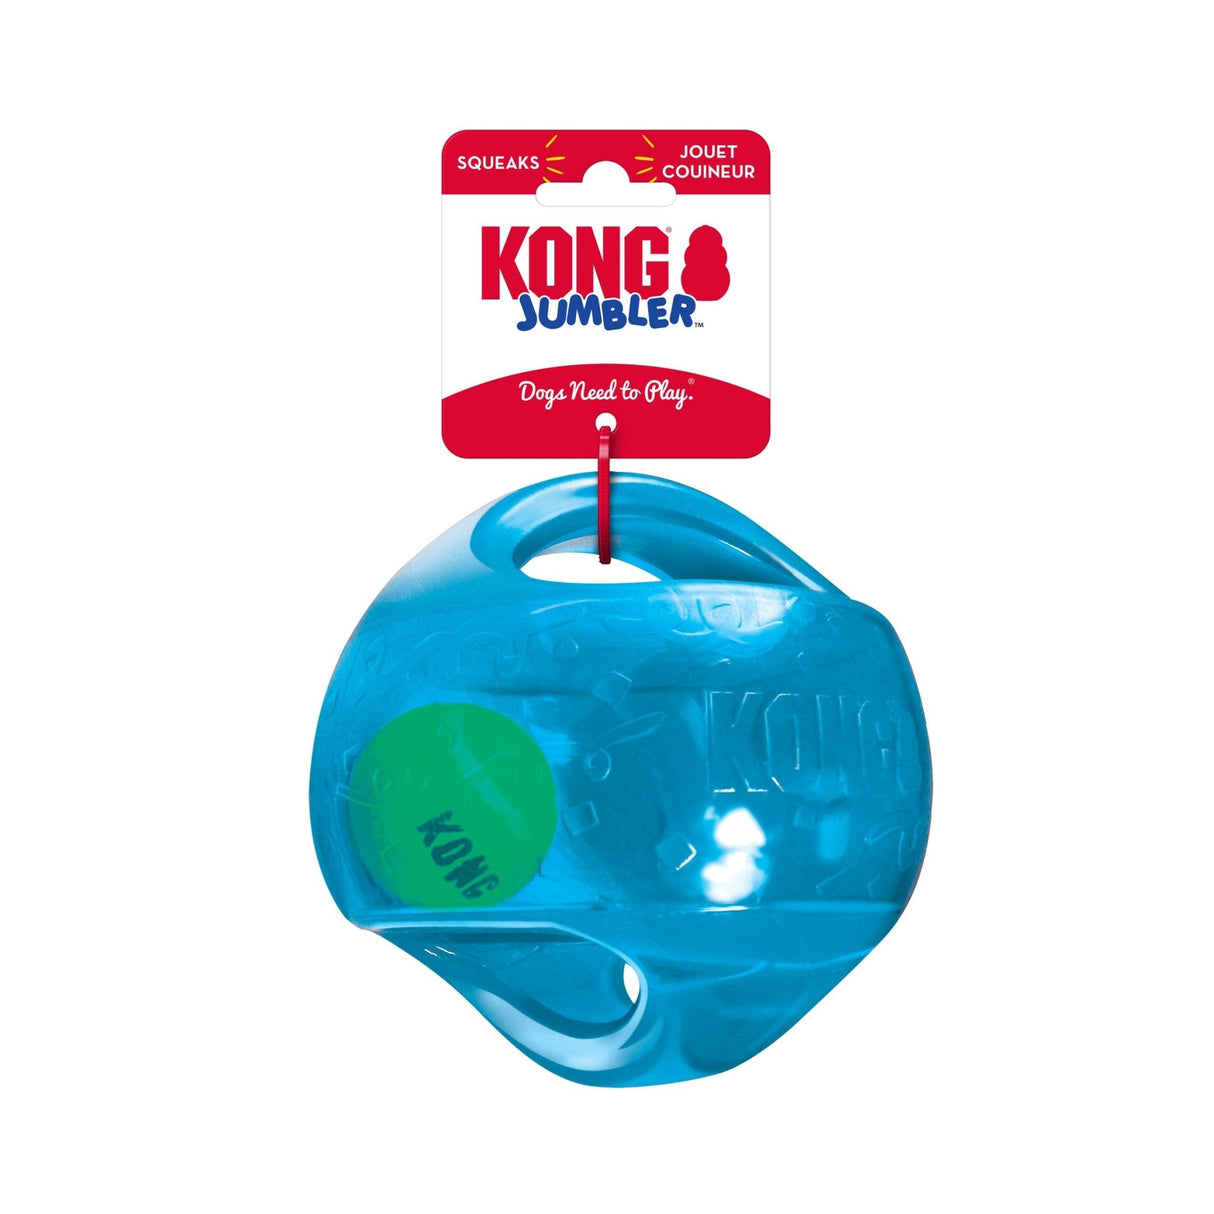 KONG Jumbler Ball Dog Toy, Kong, Medium/Large